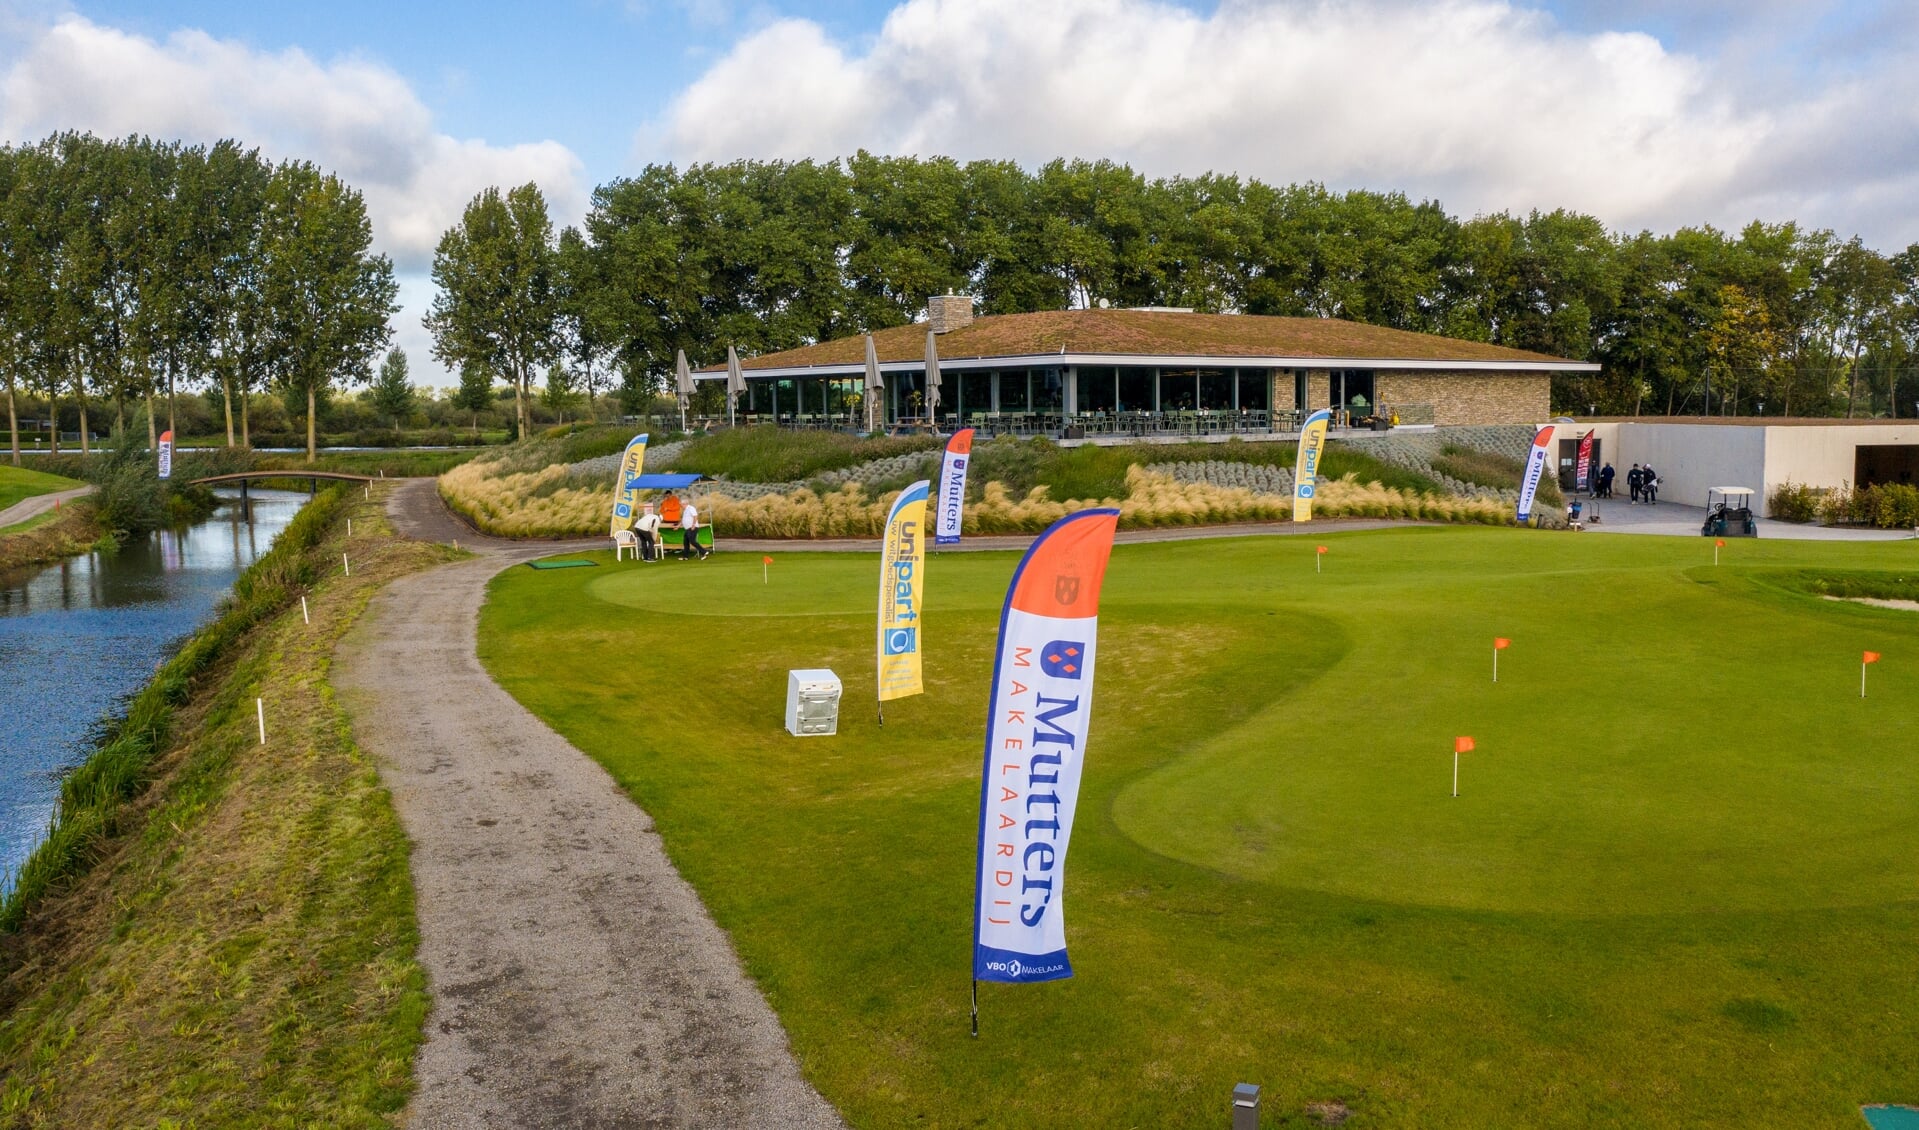 • Het toernooi wordt gespeeld op het prachtige terrein van De Kroonprins in Vianen. 